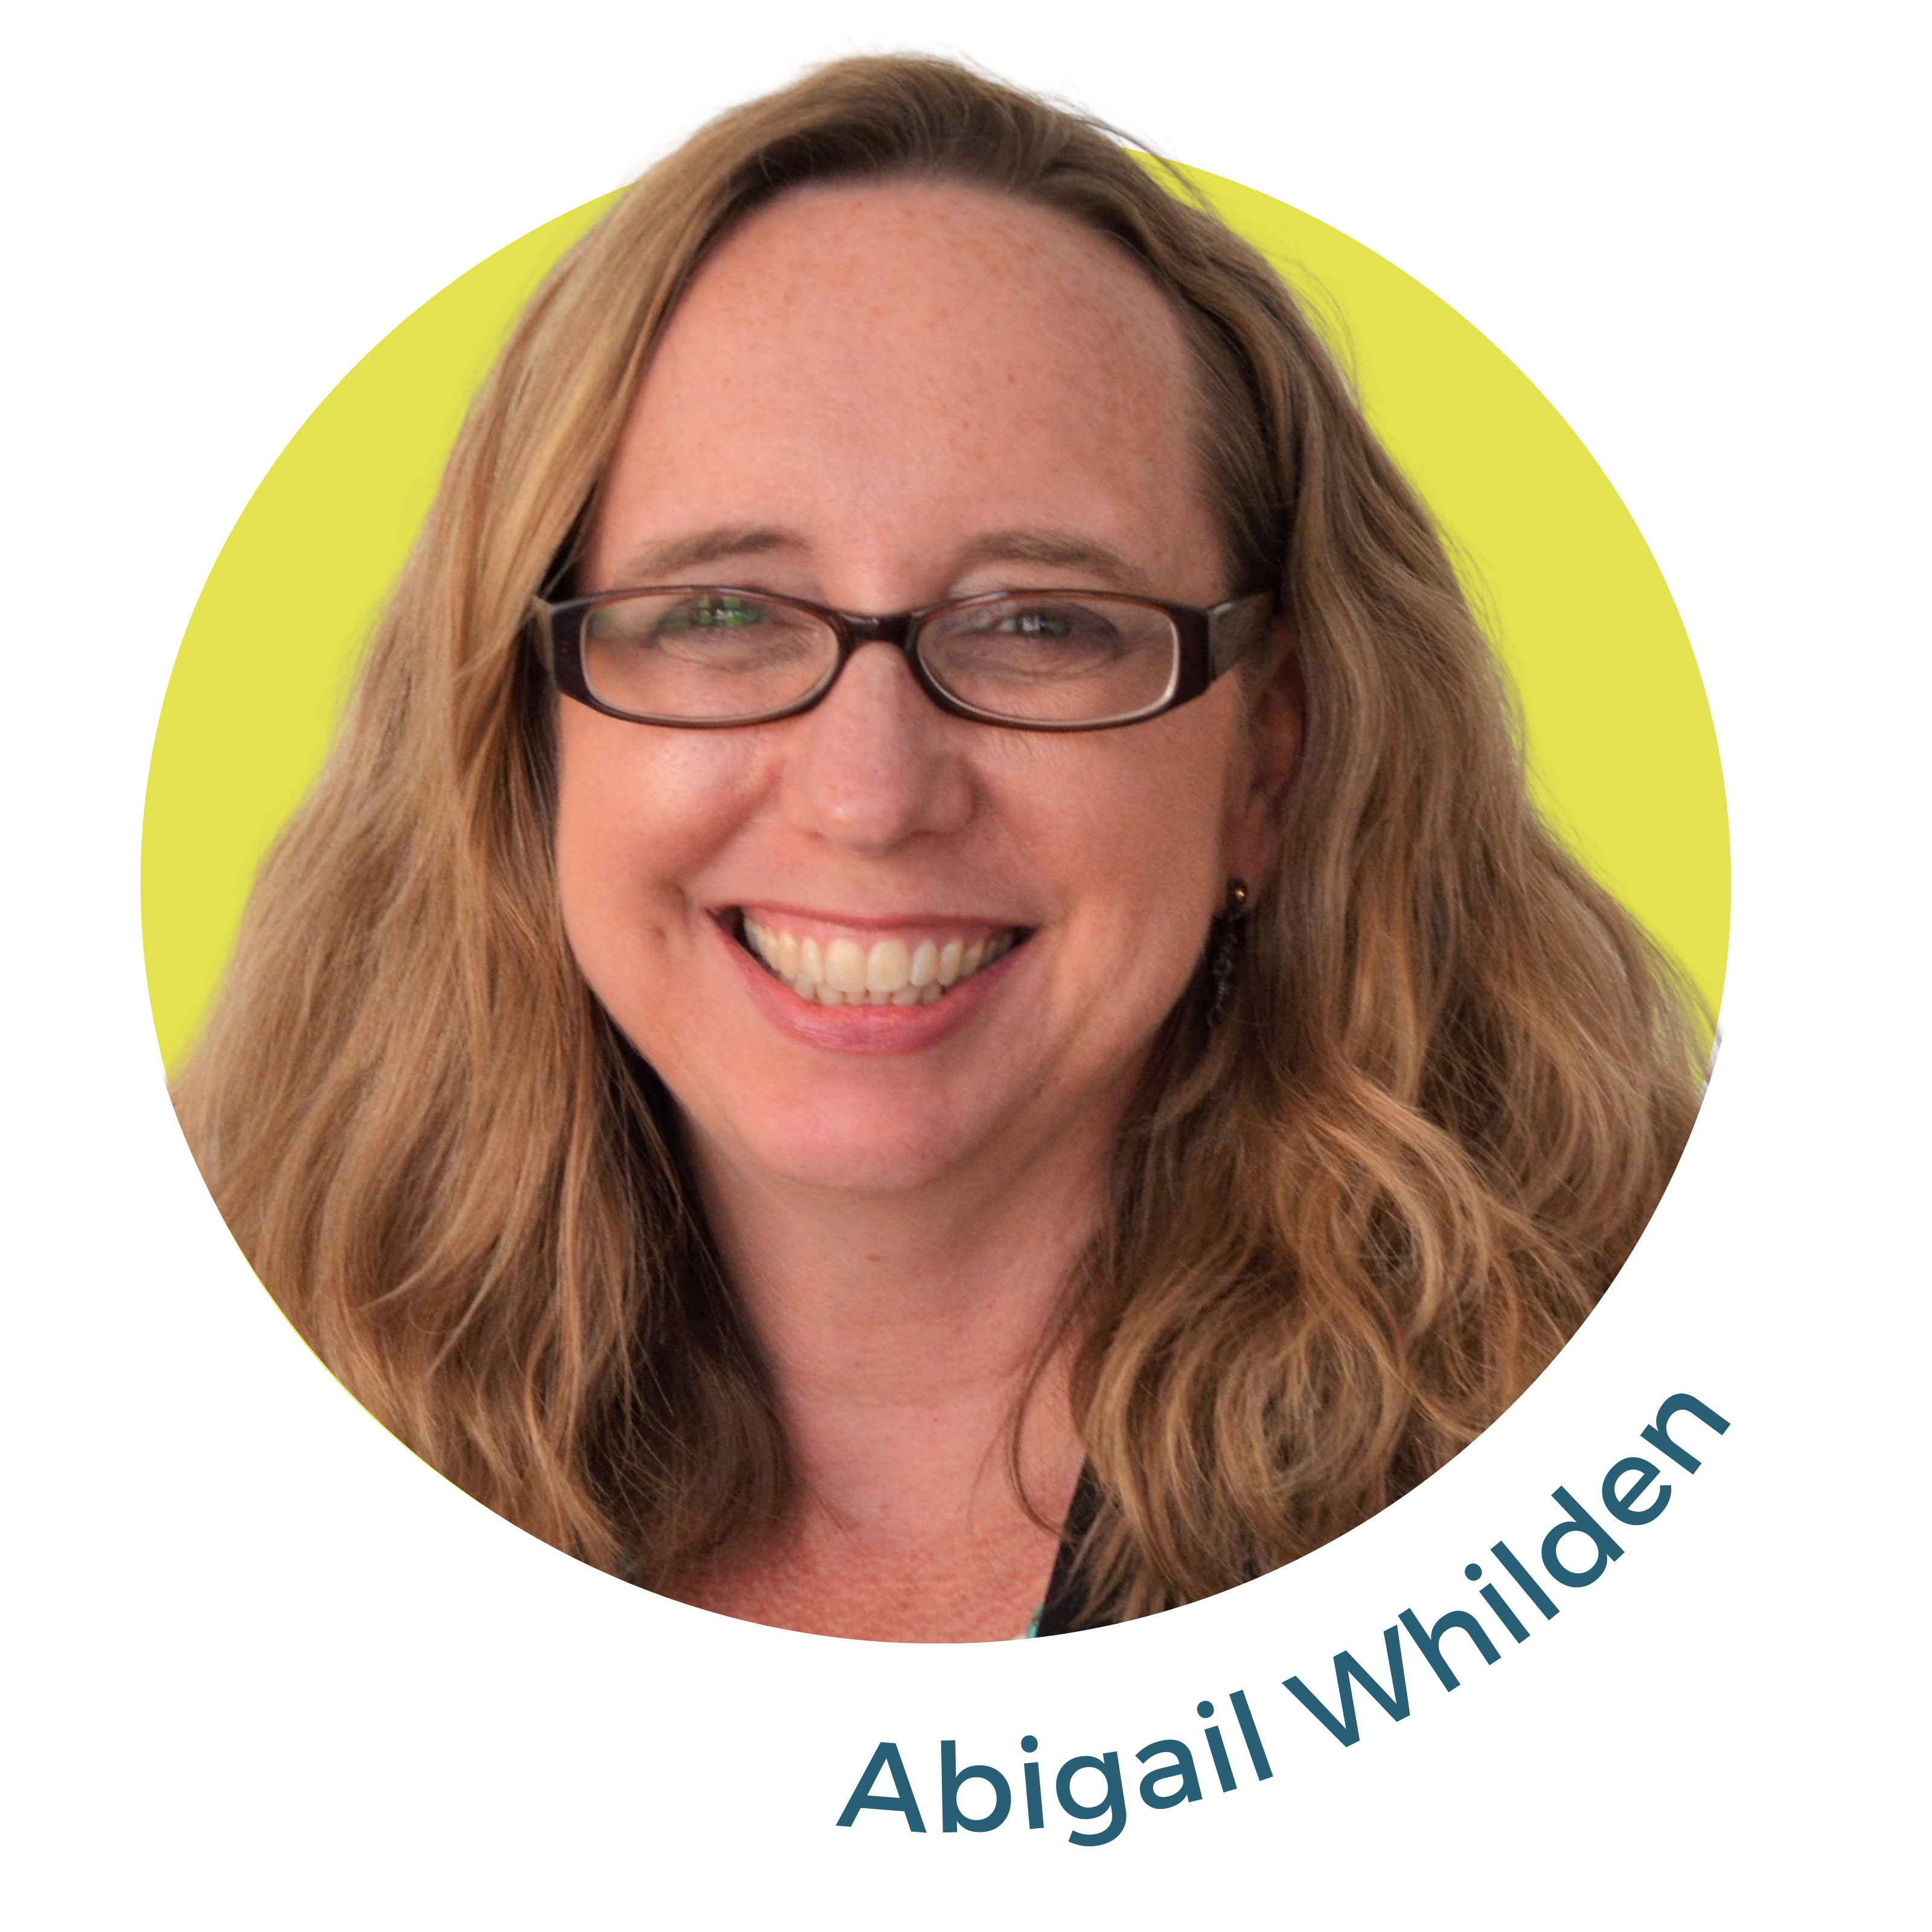 Abigail Whilden